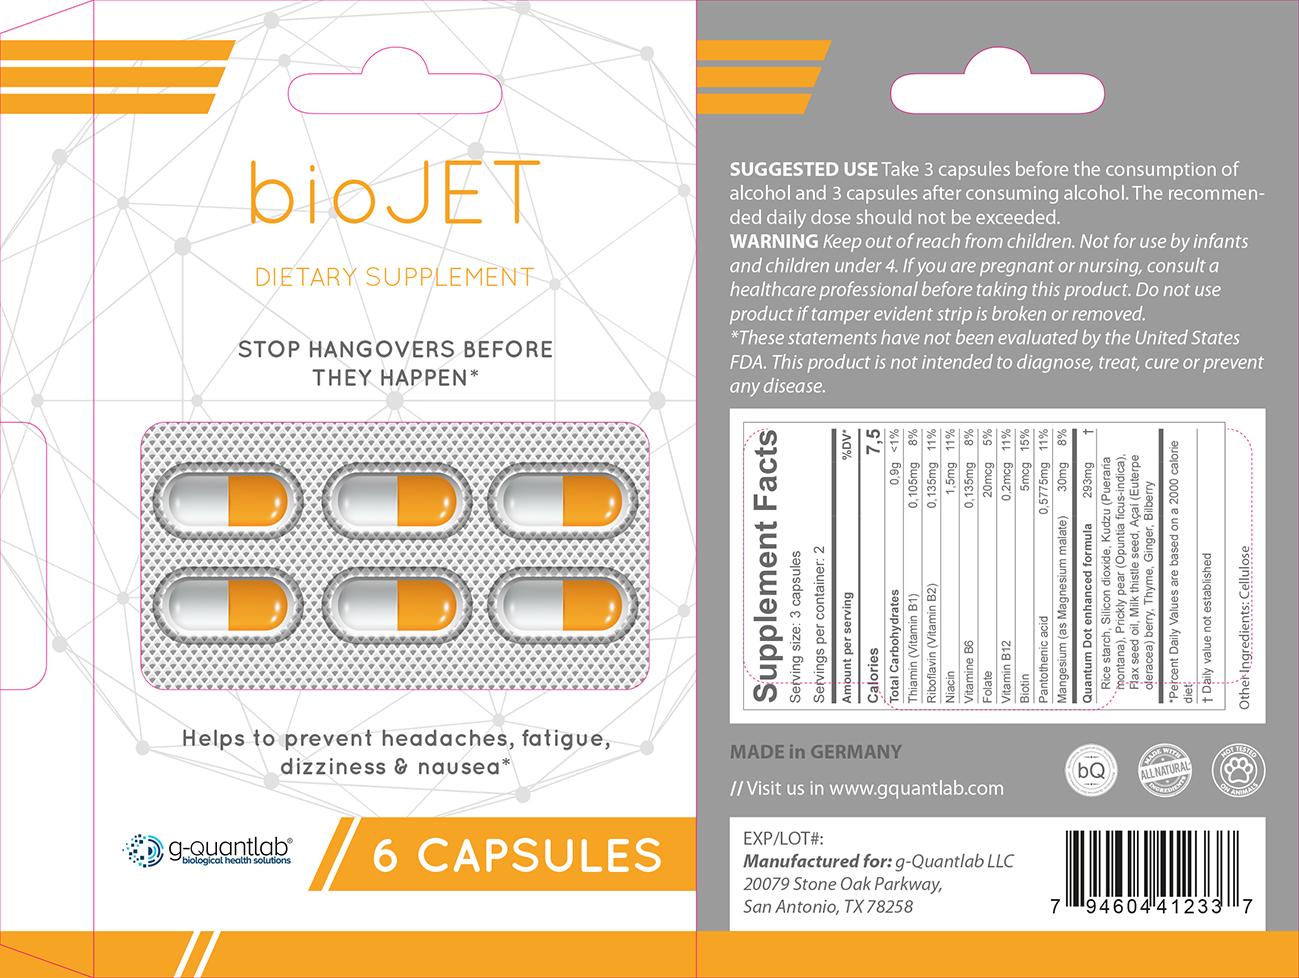 PRINCIPAL DISPLAY PANEL - Blister (6 Capsules) Label